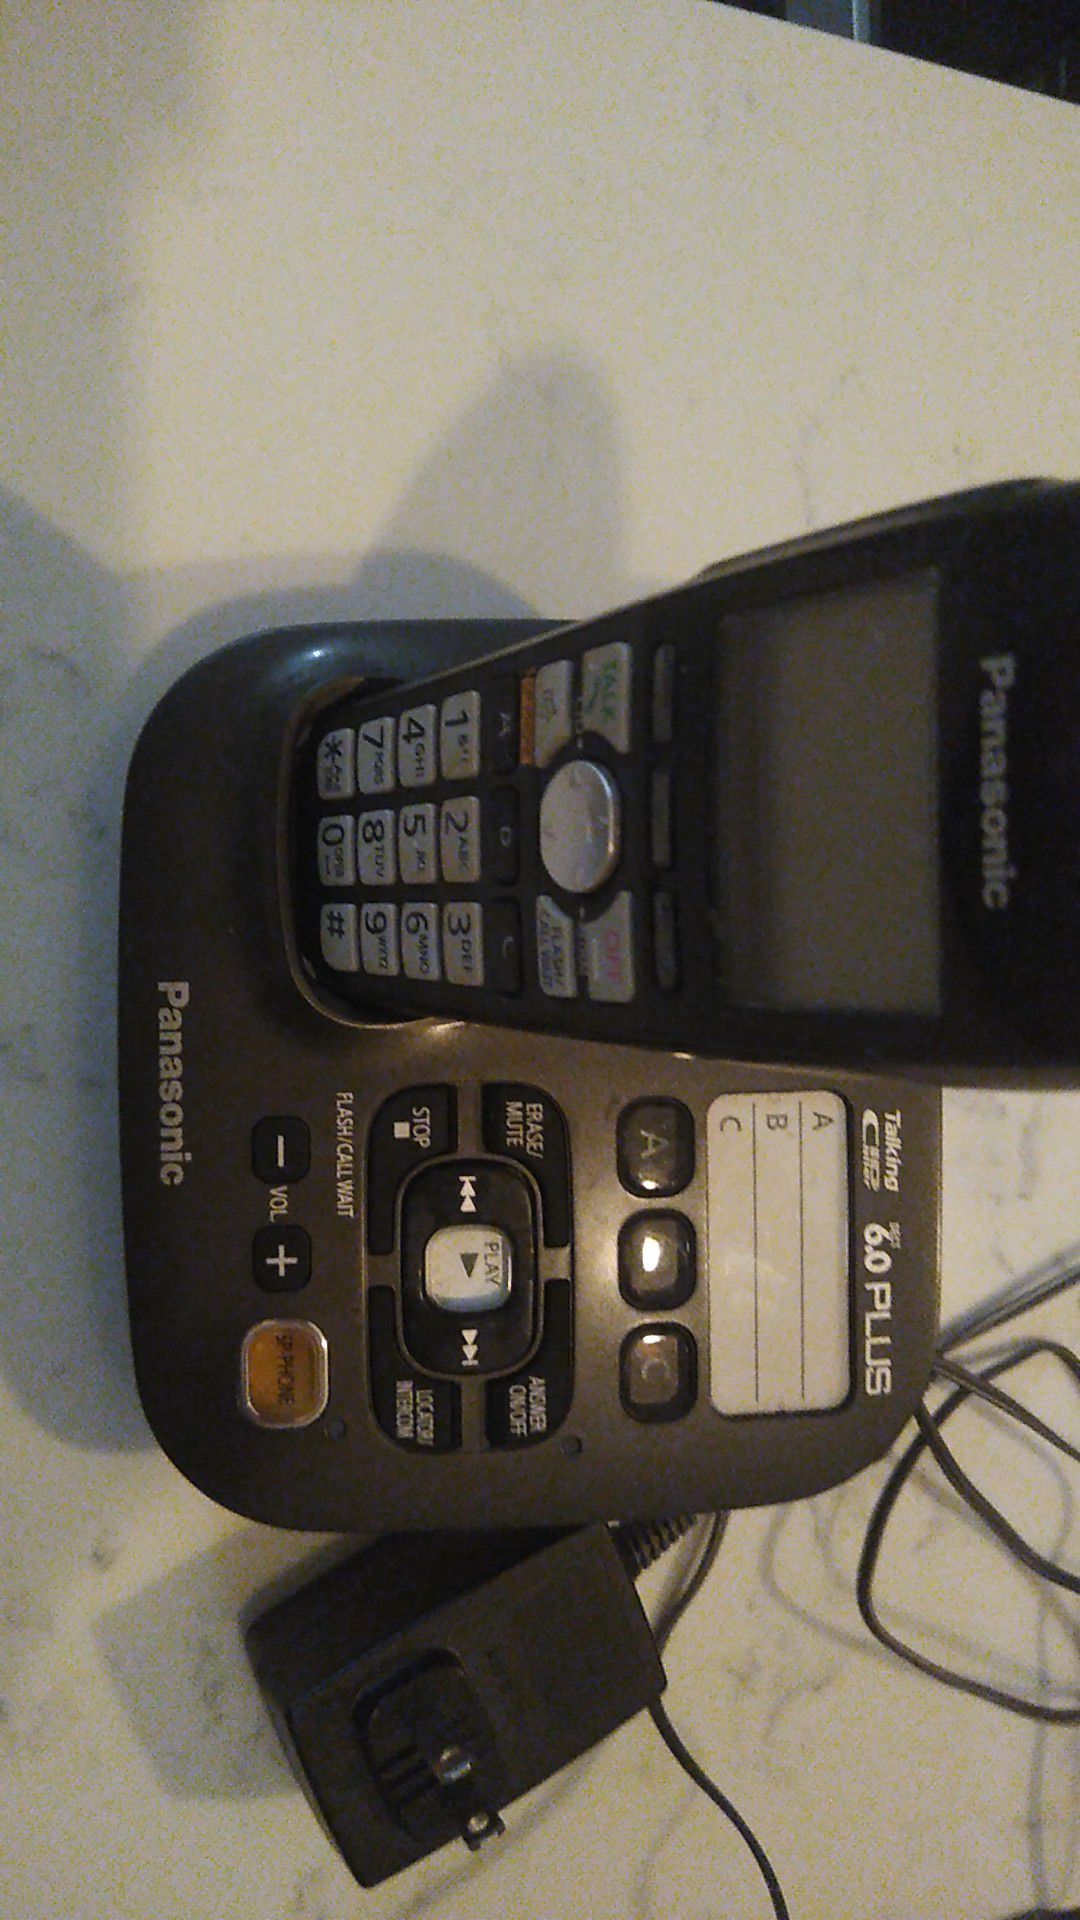 Panasonic phone answering machine